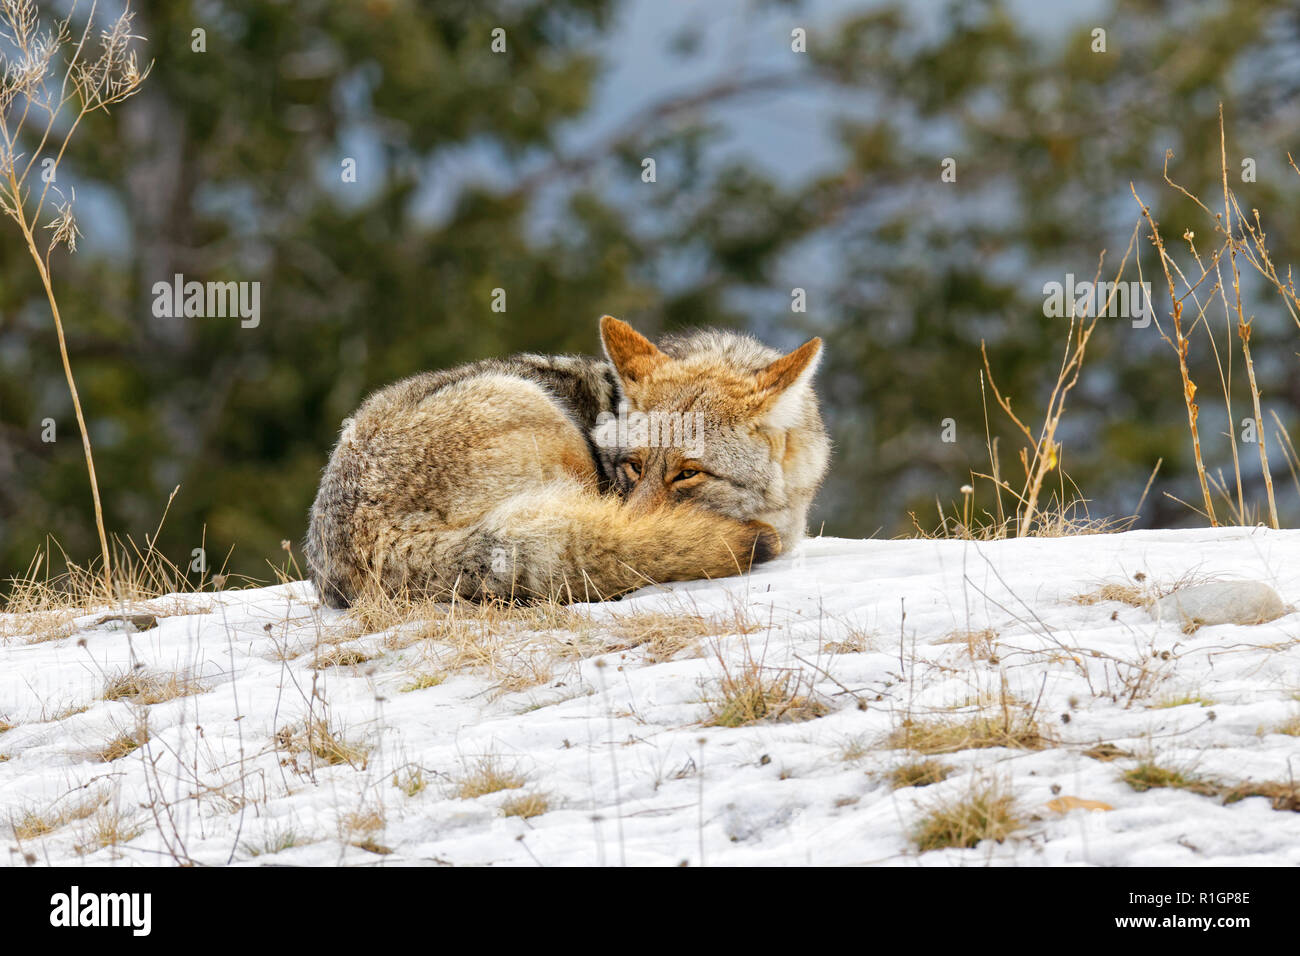 42 757,09767 Coyote CU recroquevillée dormir et essayer de garder au chaud, les yeux à moitié ouverte sur une colline d'herbe herbe en hiver froid neige, arbres en arrière-plan Banque D'Images